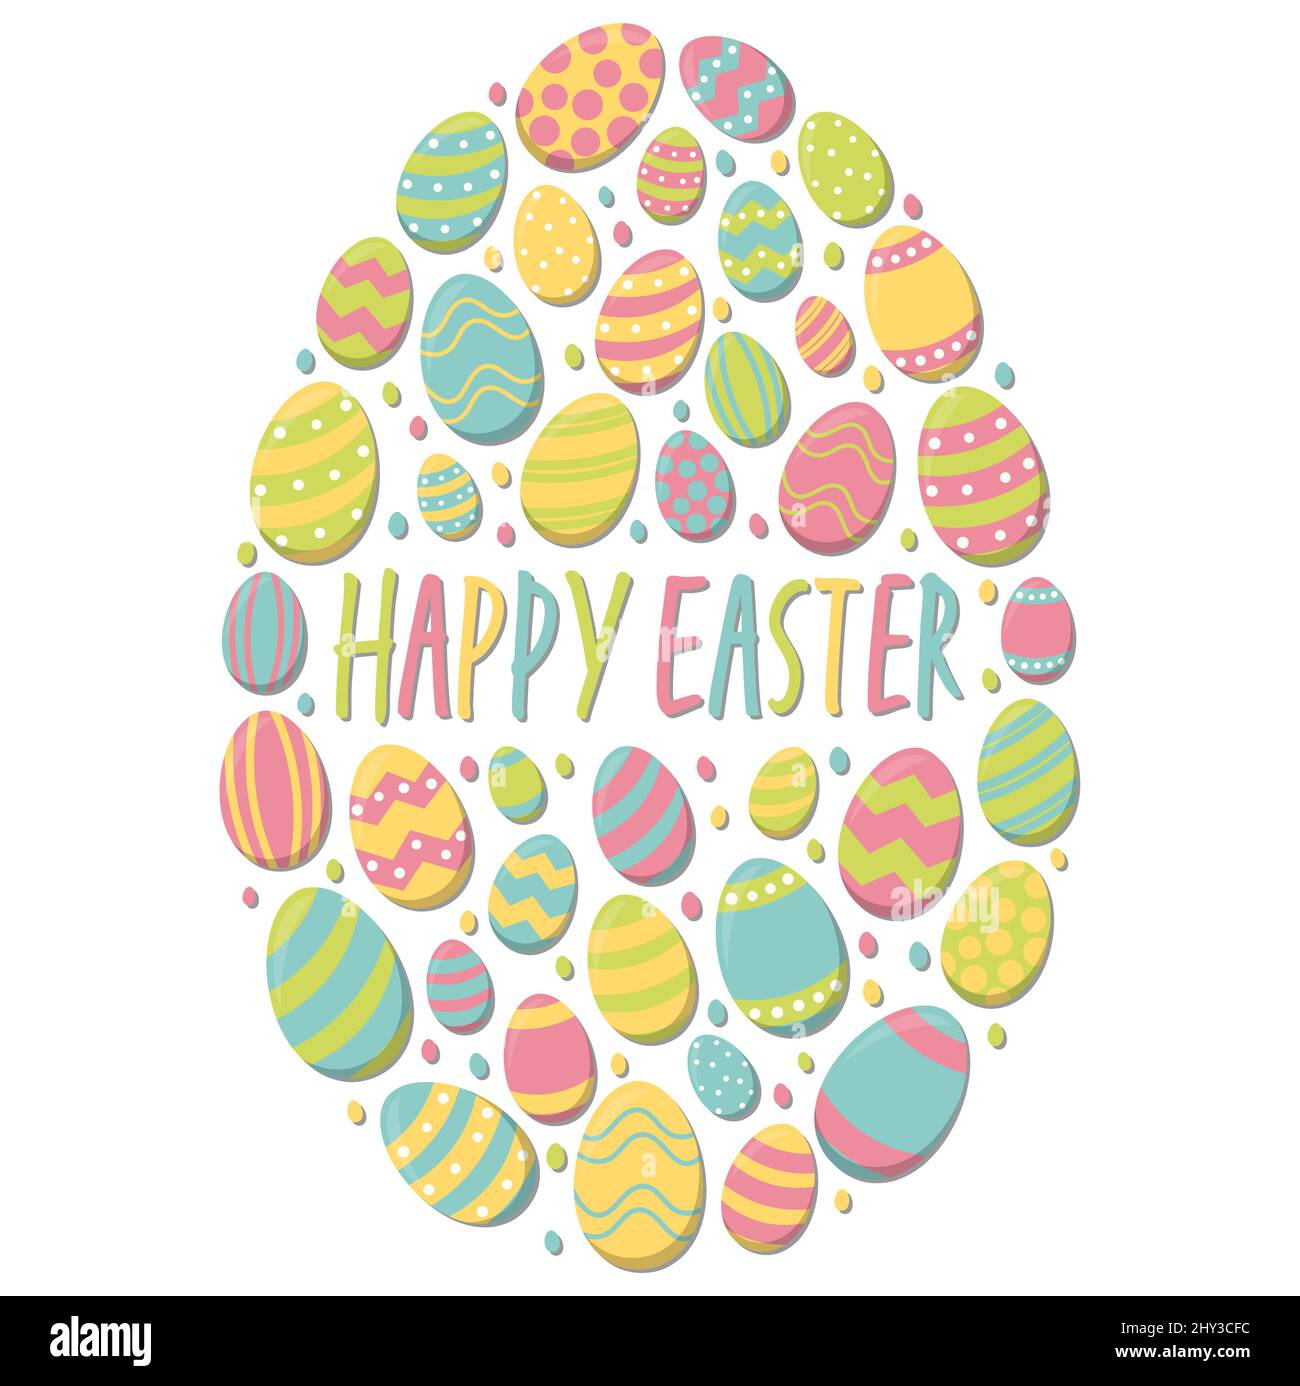 eps-Vektor-Illustration von bemalten ostereiern mit verschiedenen Farben kombiniert, um ein großes Ei und ostern Zeit Grüße auf weißem Hintergrund zu bilden Stock Vektor